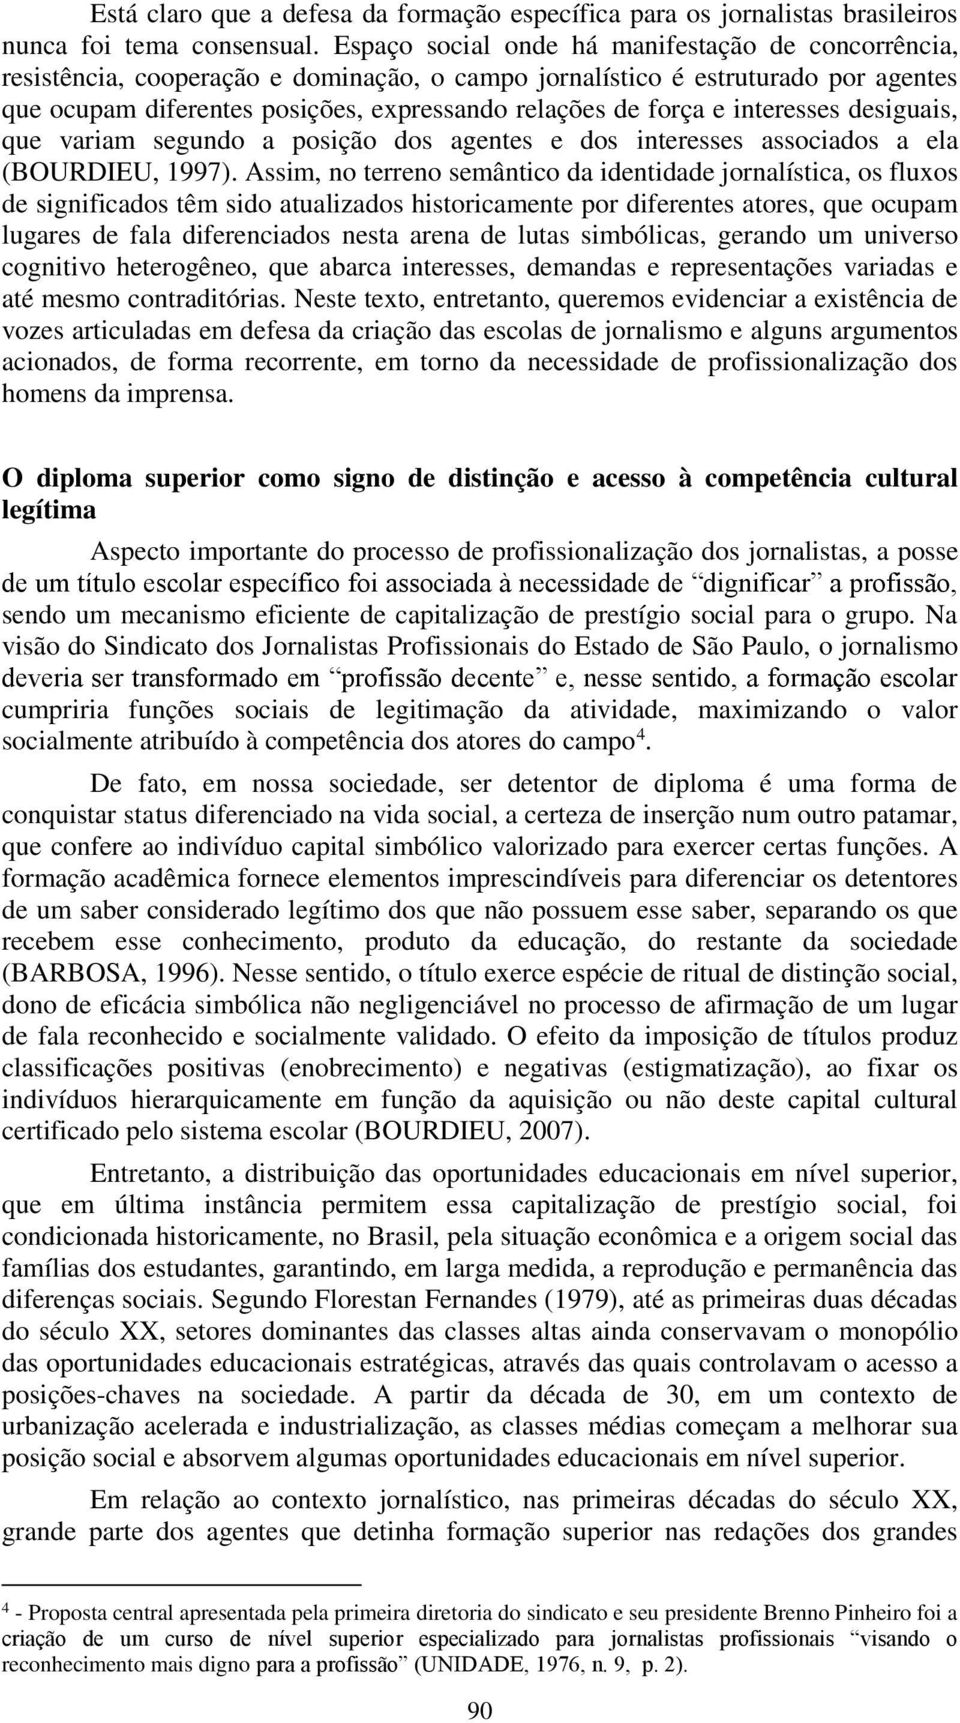 interesses desiguais, que variam segundo a posição dos agentes e dos interesses associados a ela (BOURDIEU, 1997).